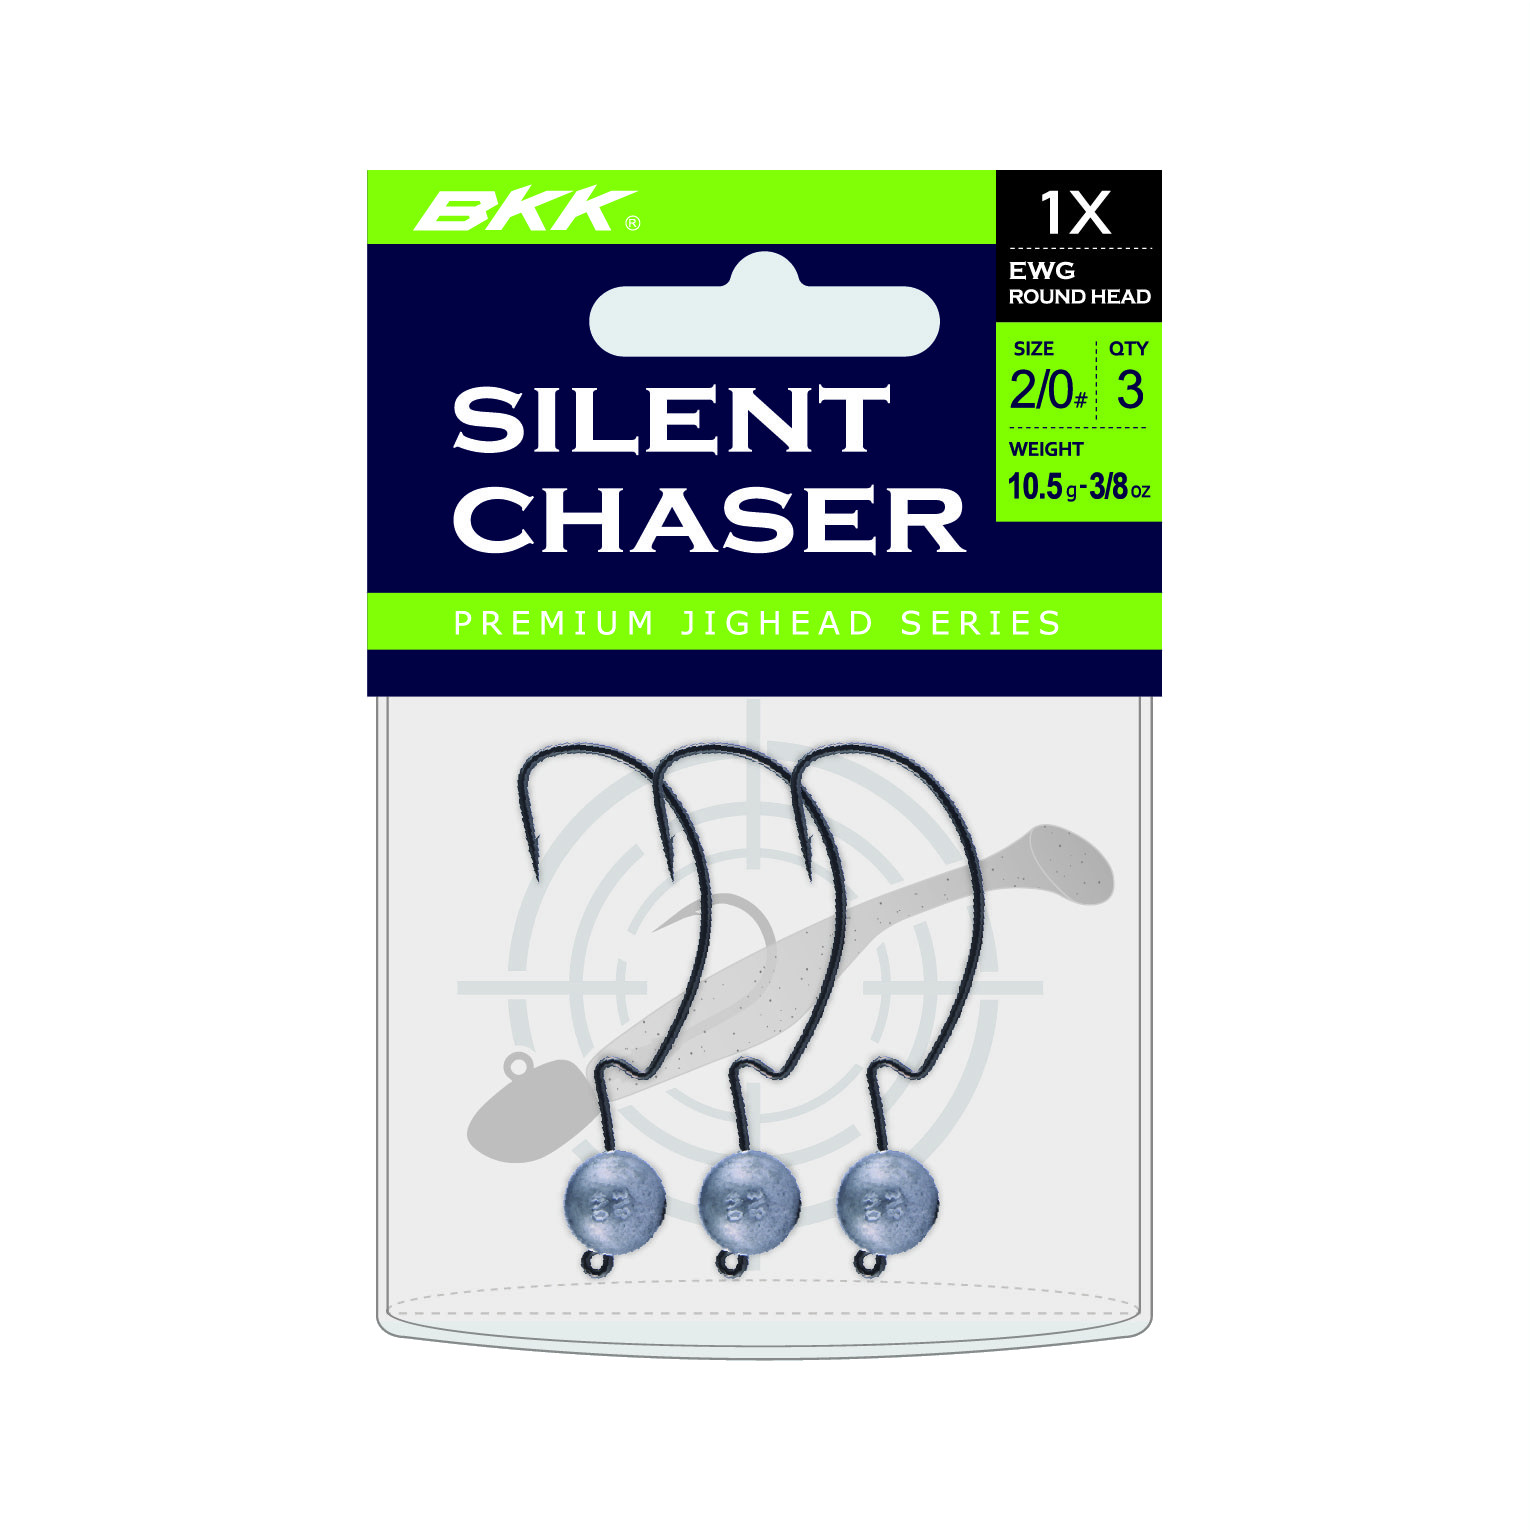 BKK Silent Chaser 1X EWG Round Head Loodkop #1/0